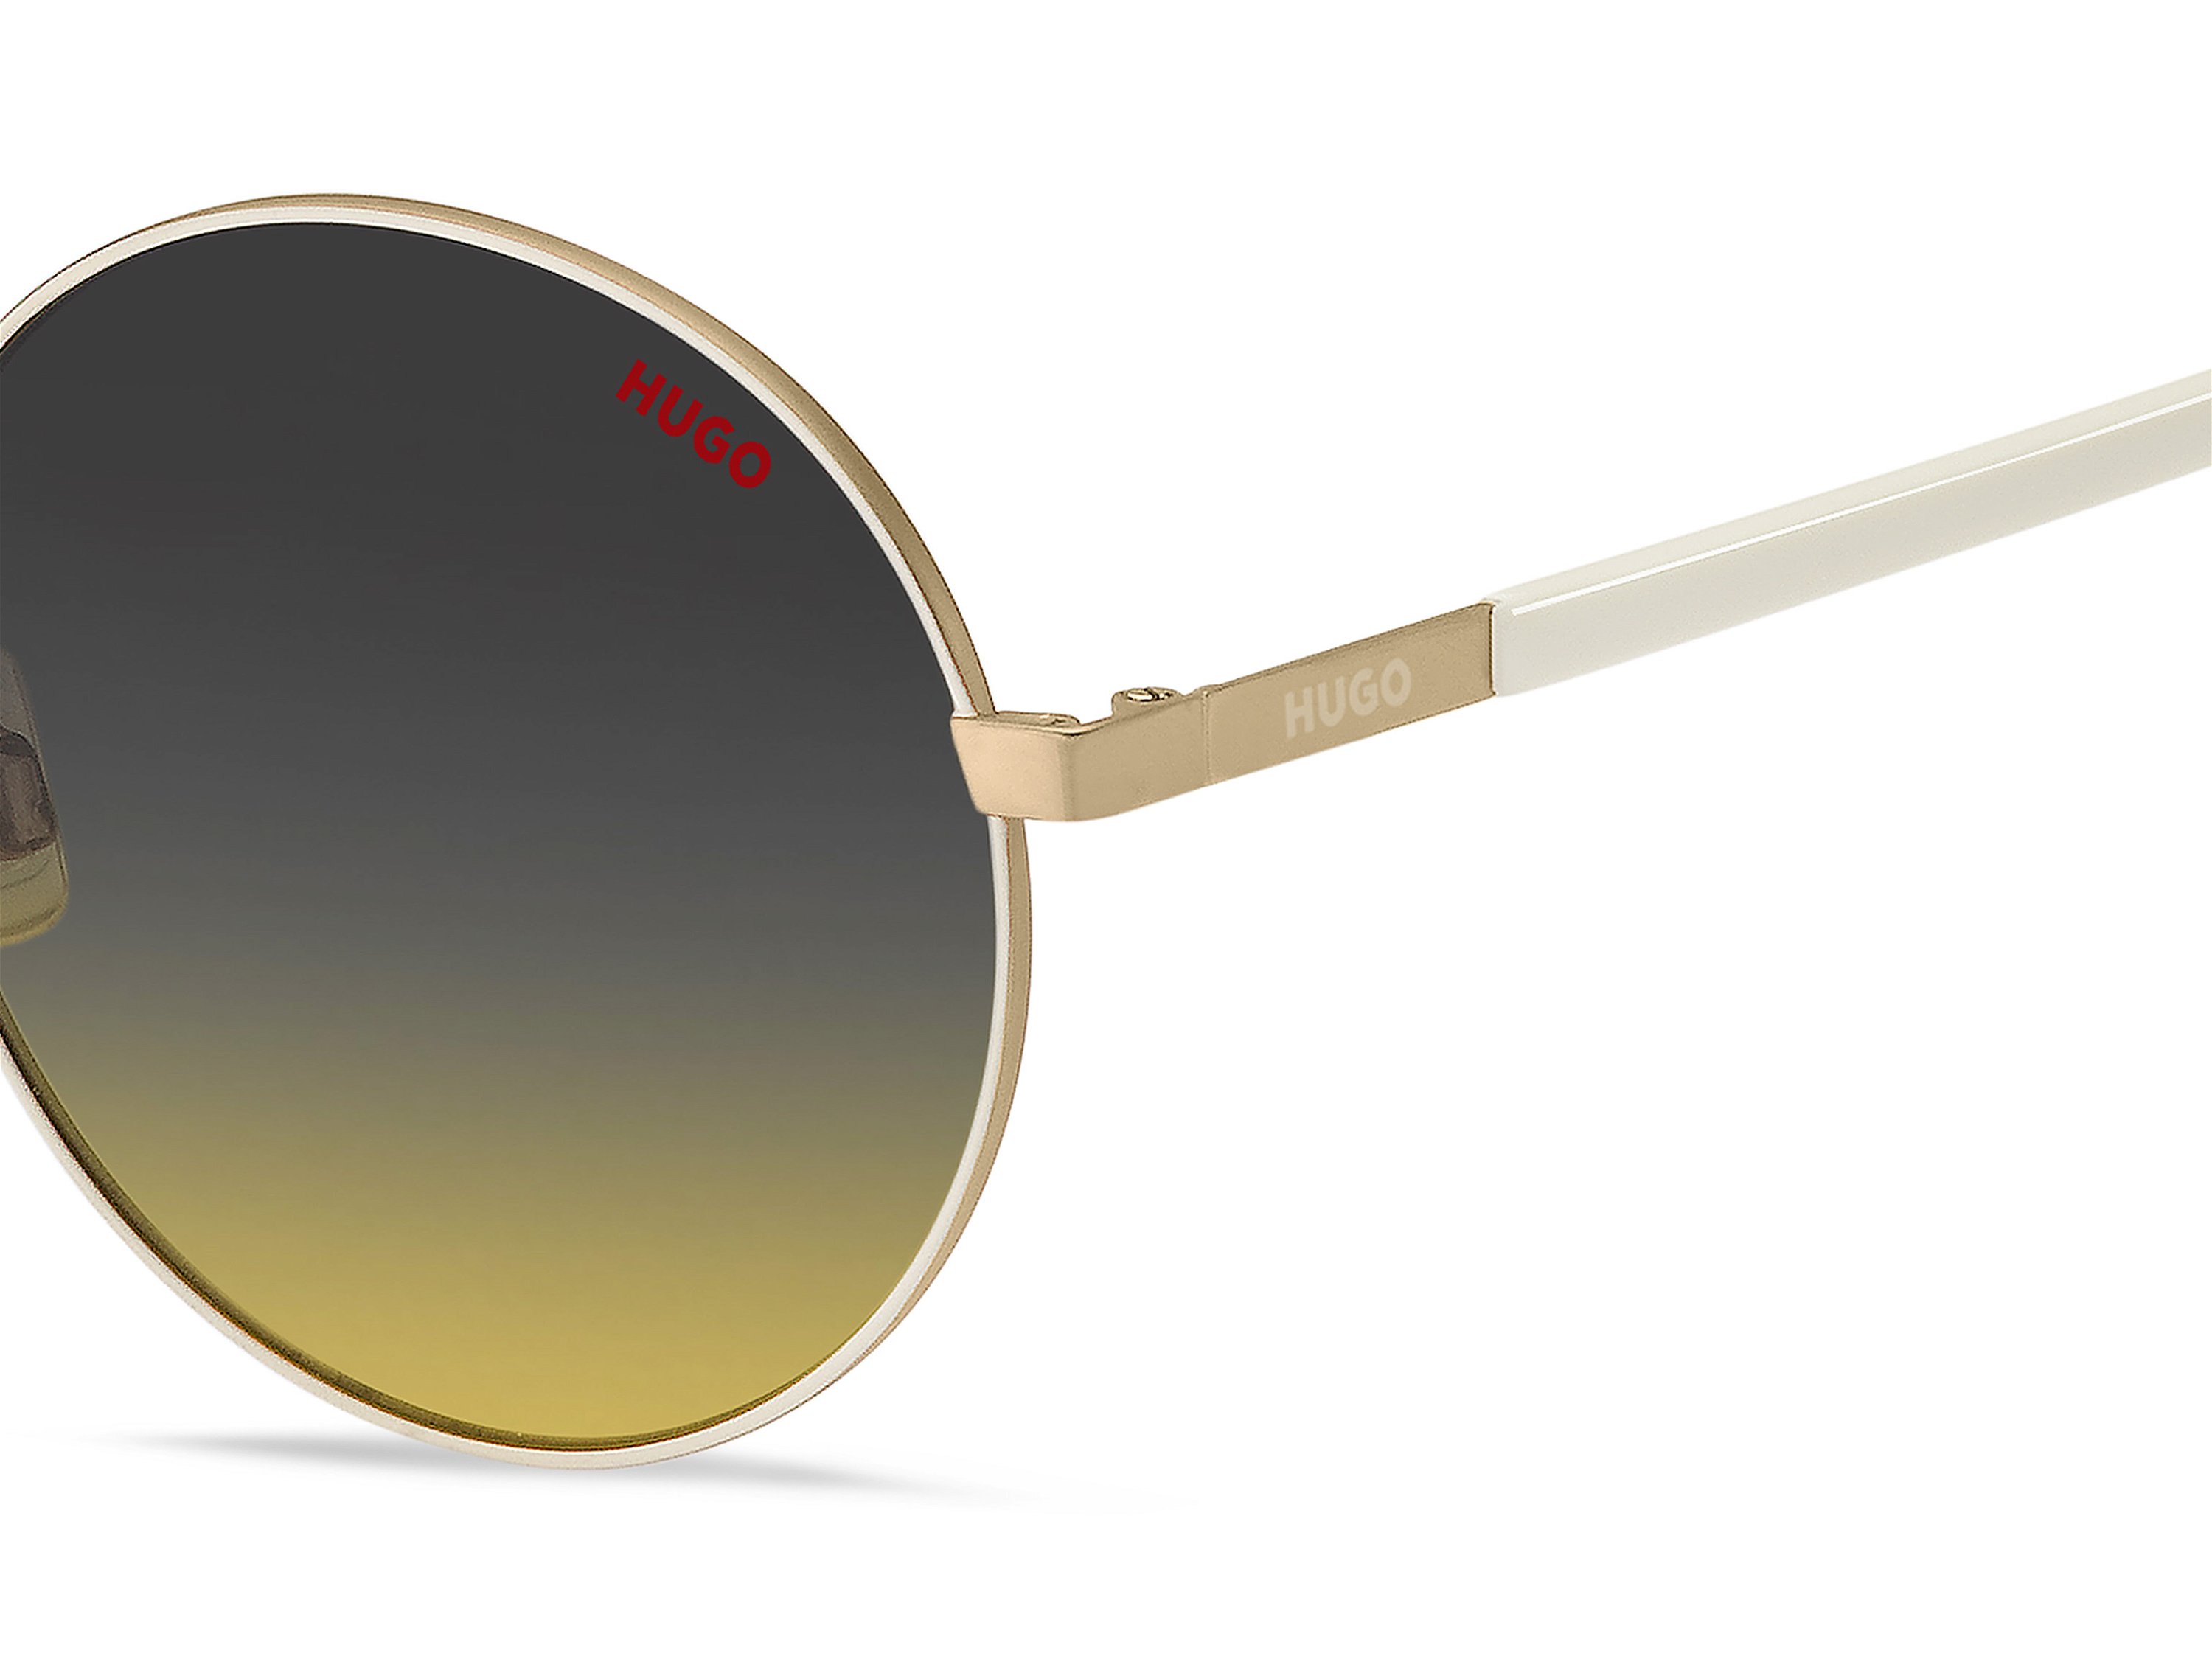 Das Bild zeigt die Sonnenbrille HG1237/S B4E von der Marke Hugo in gold.